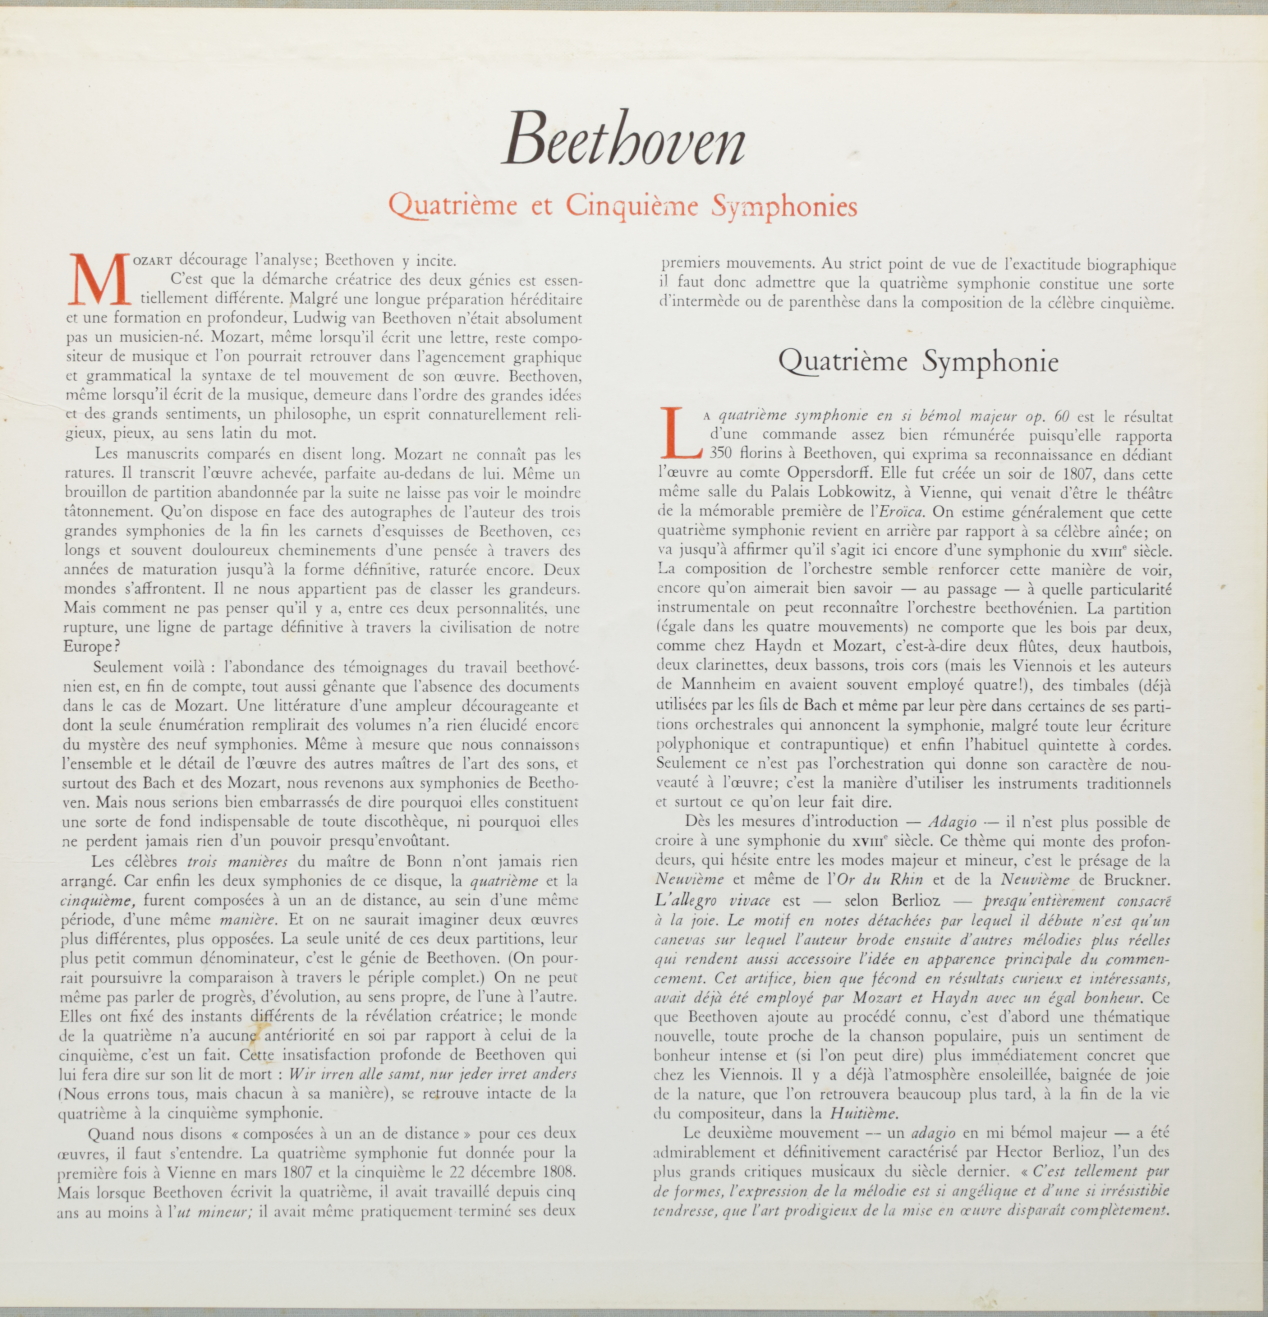 Beethoven: Les symphonies de Beethoven - 4ème symphonie en si bémol majeur; 5ème symphonie en do 